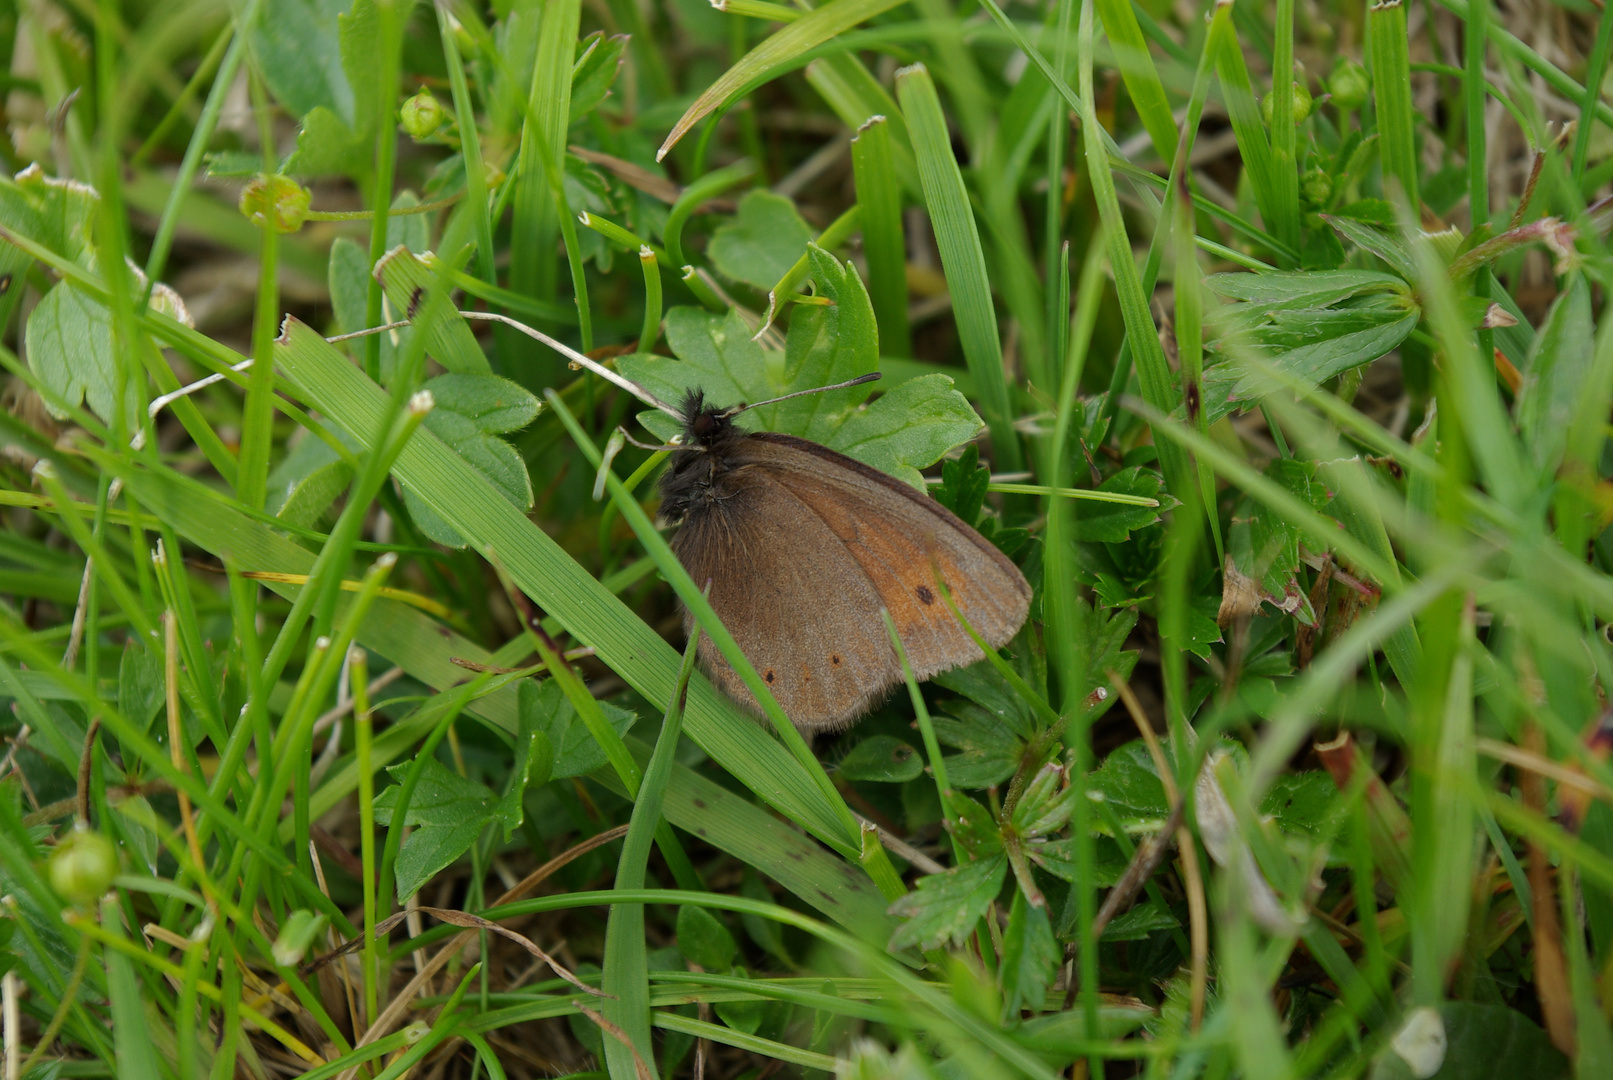 Schmetterling im Gras